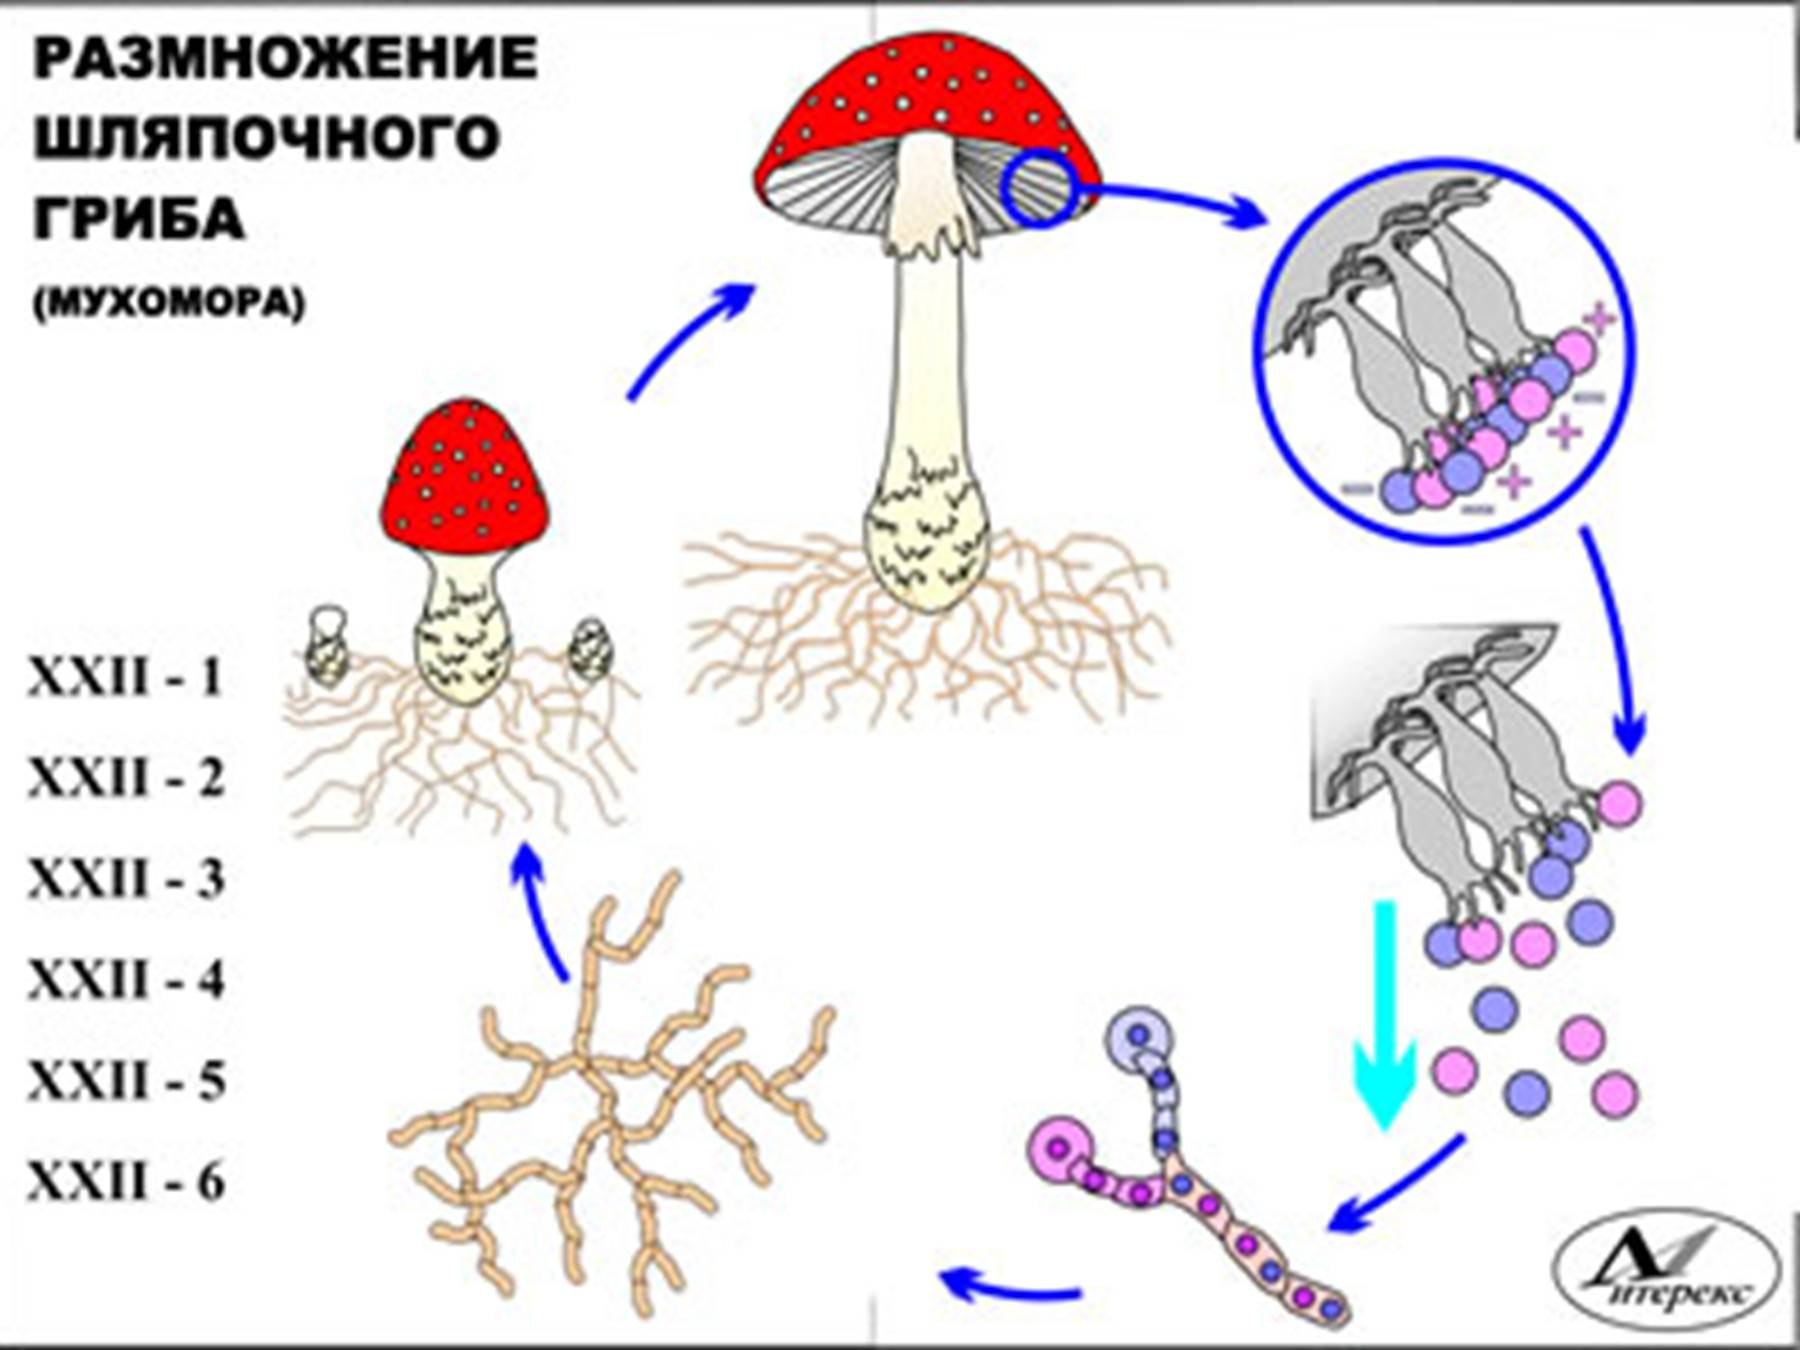 Шляпочные грибы в период размножения формируют. Размножение шляпочных грибов грибницей. Схема полового размножения шляпочных грибов. Цикл размножения шляпочных грибов. Размножение грибов спорами схема.